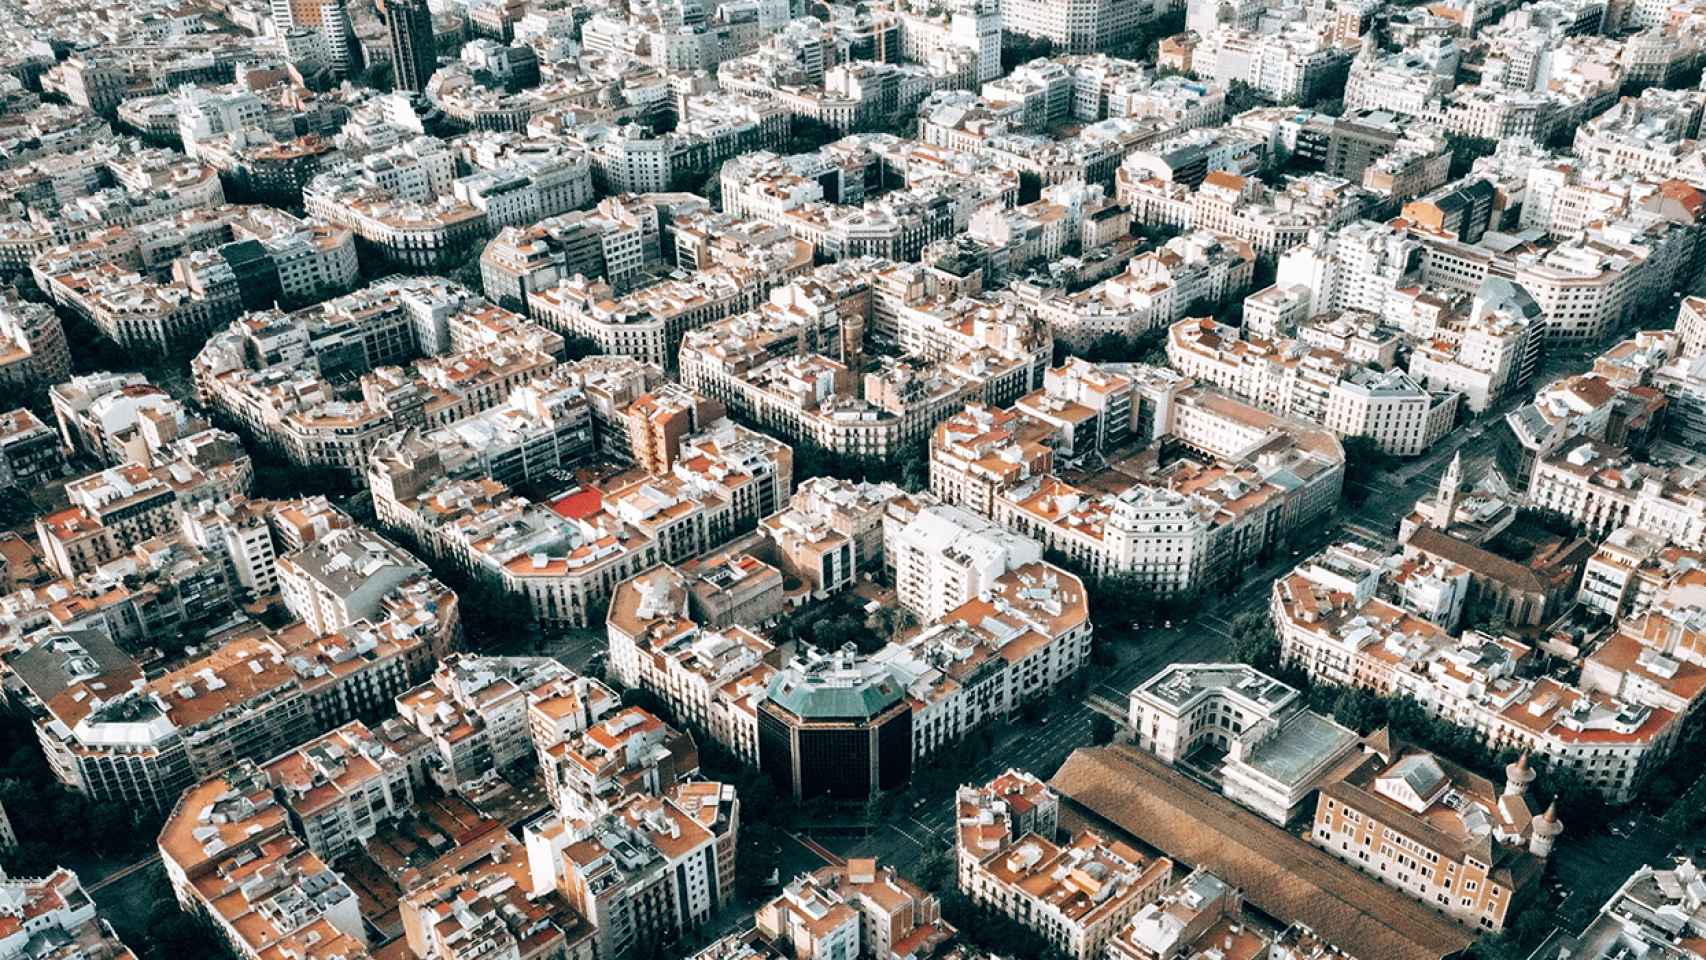 La ciudad de Barcelona desde el aire.